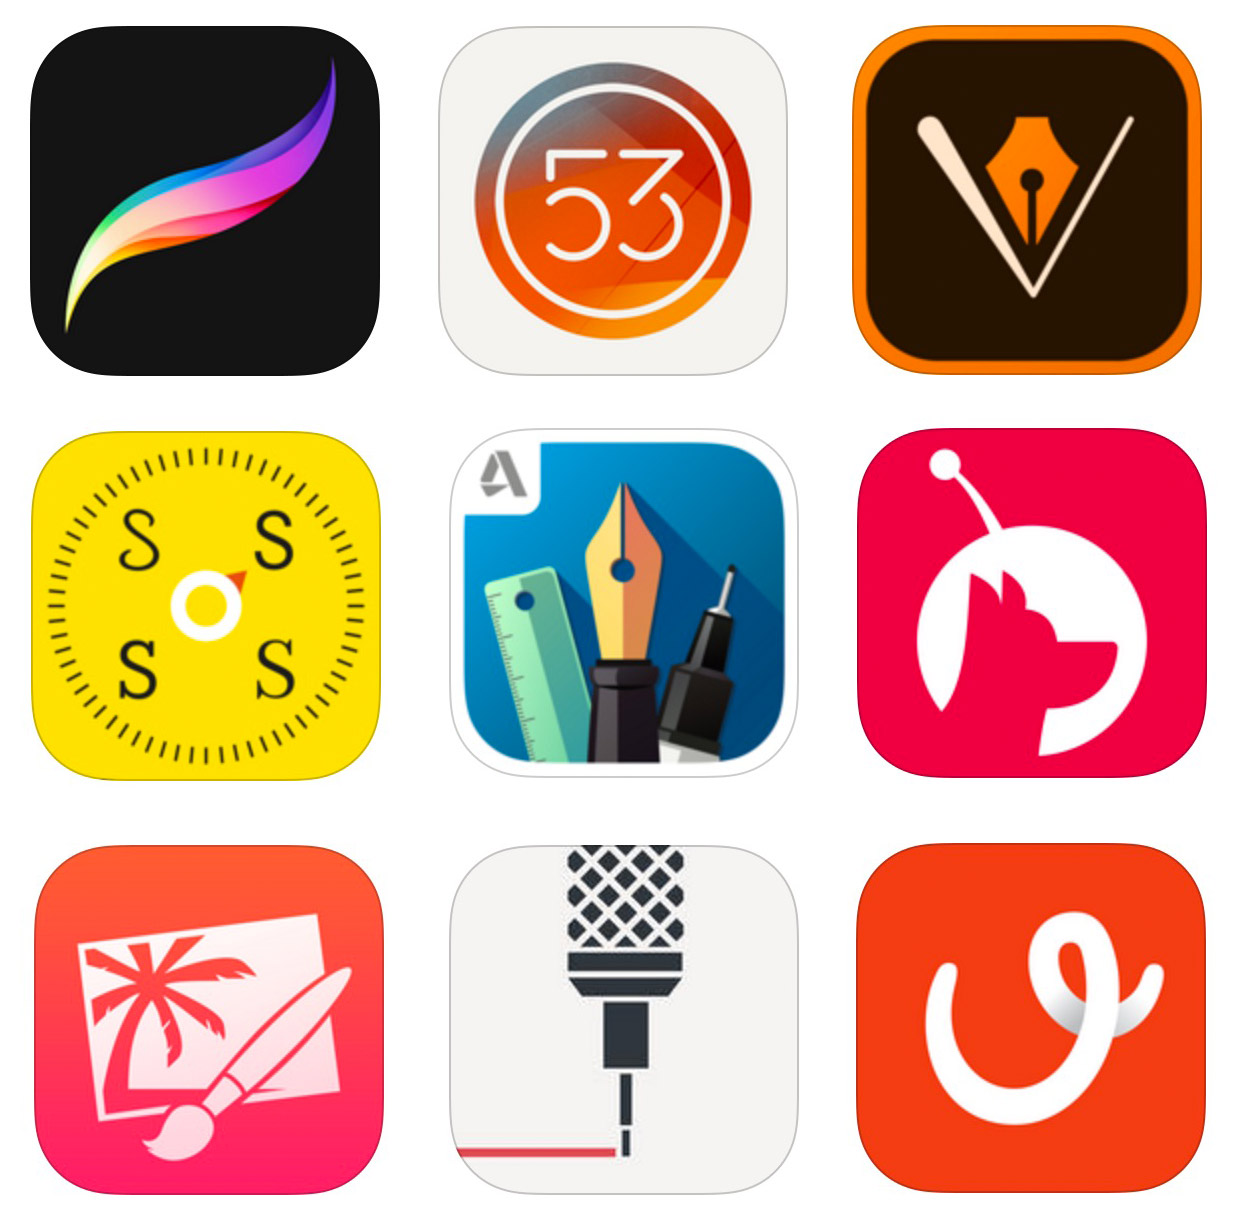 Download The Designer S Ipad Pro App Buyer S Guide